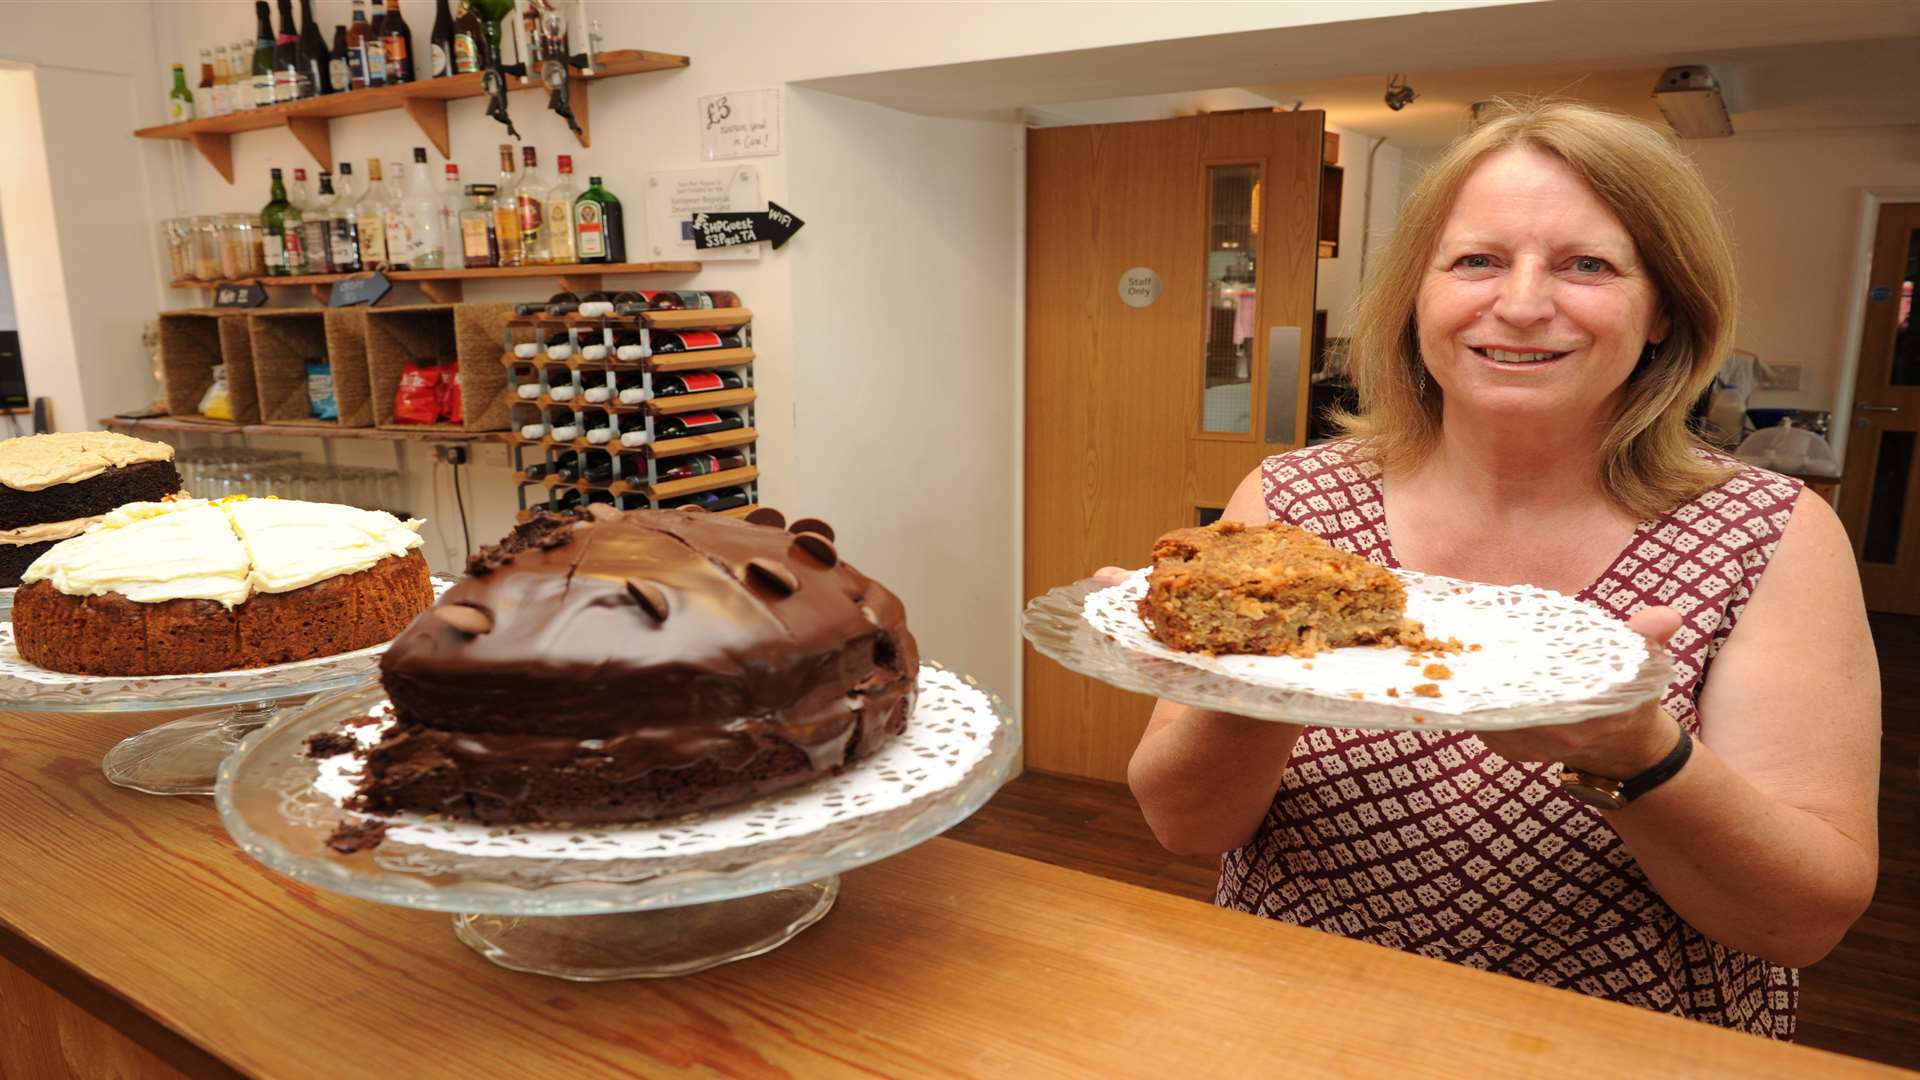 Amanda Gransden made cakes for National Sponge Cake Day